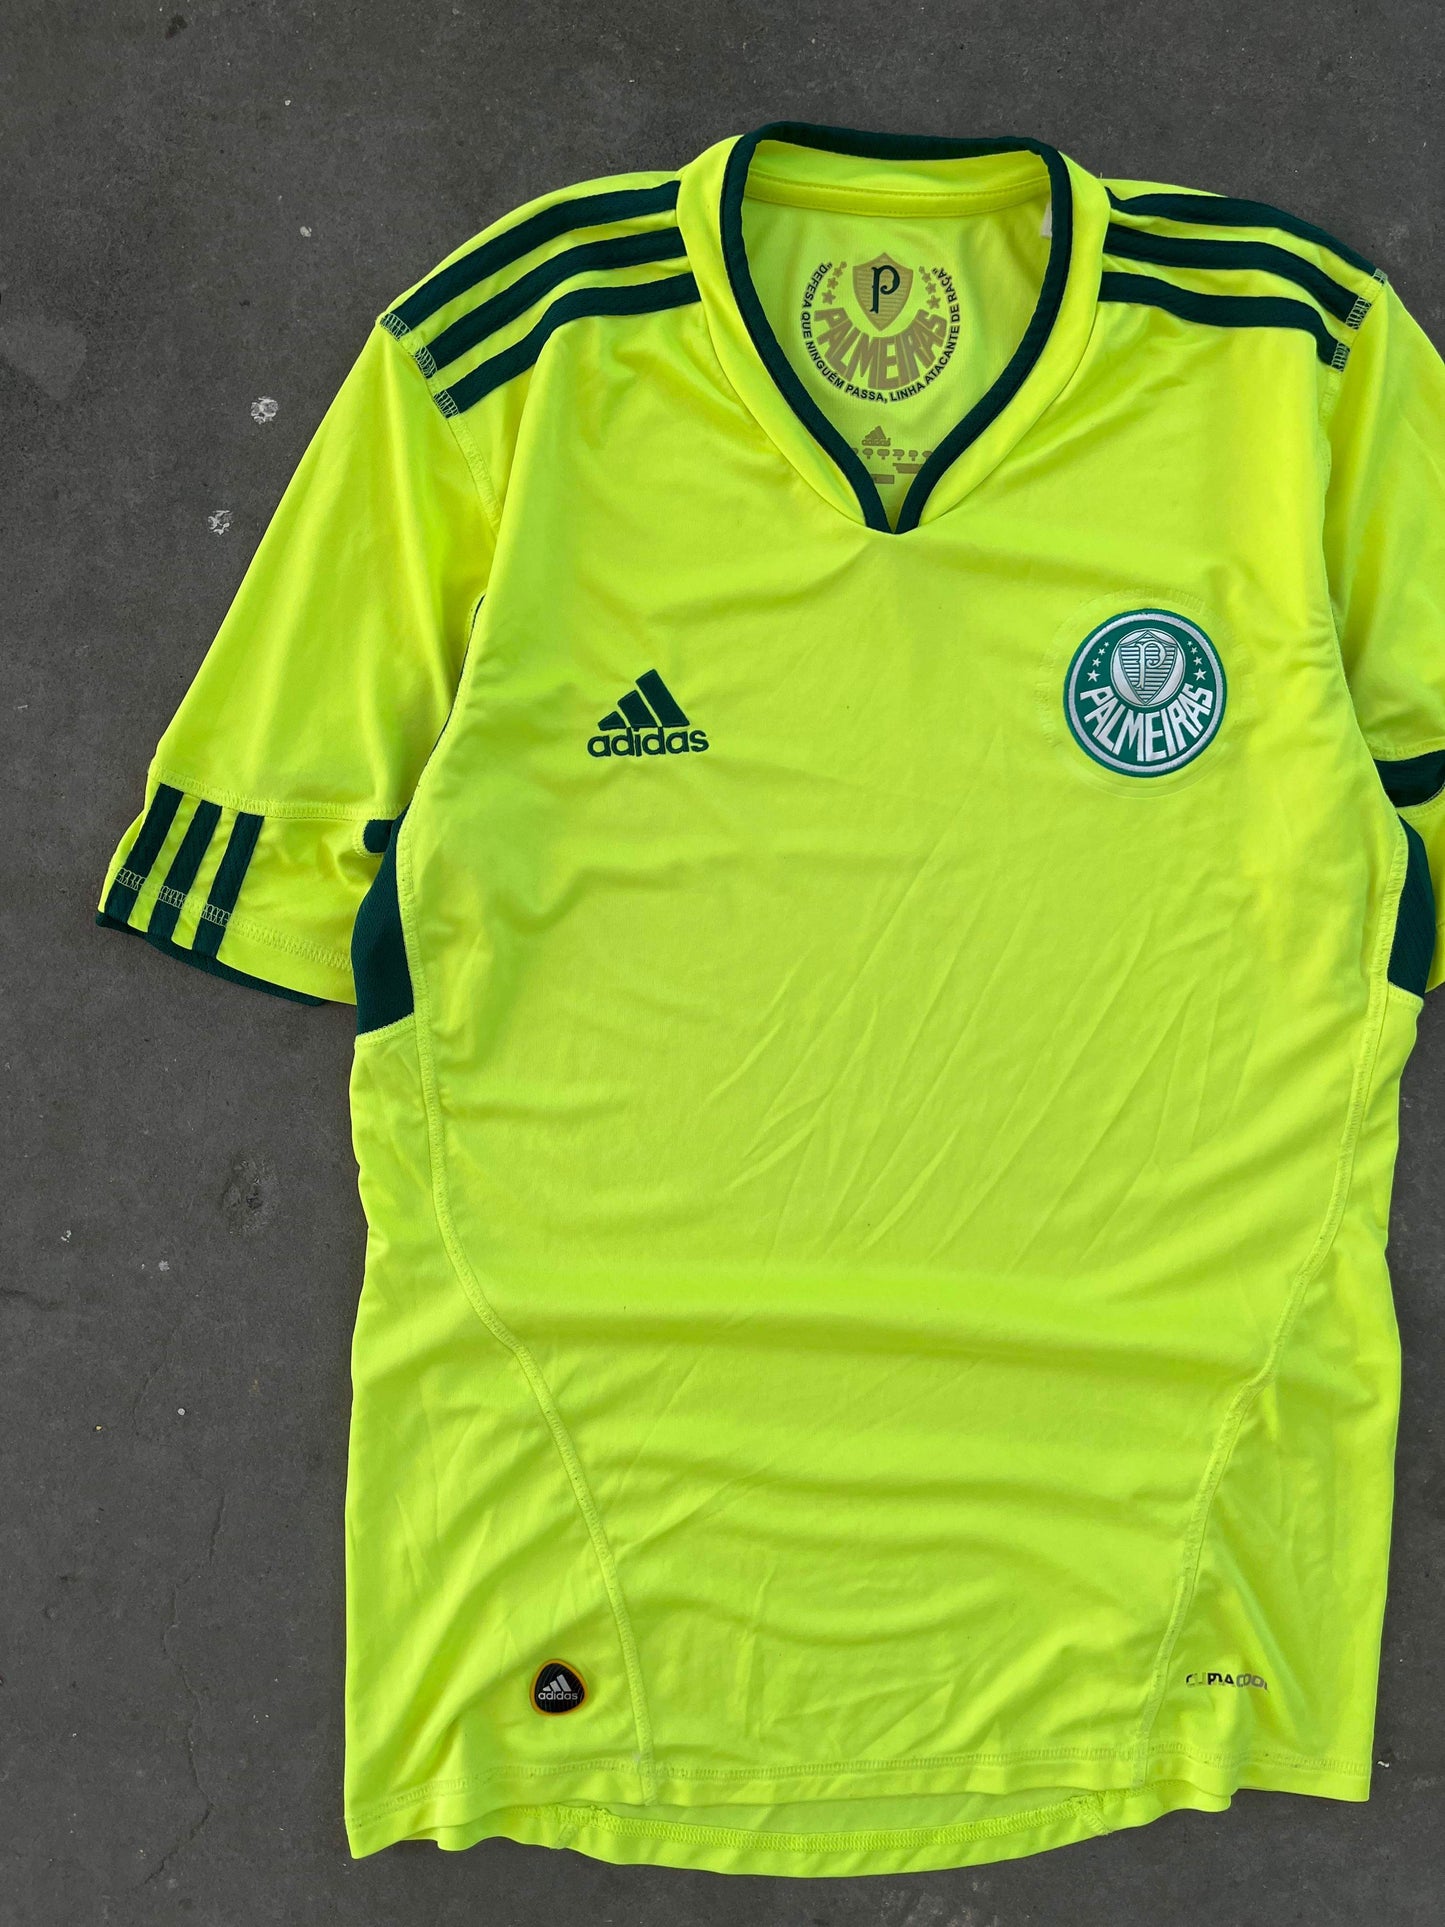 (S/M) Adidas Palmeiras Kit